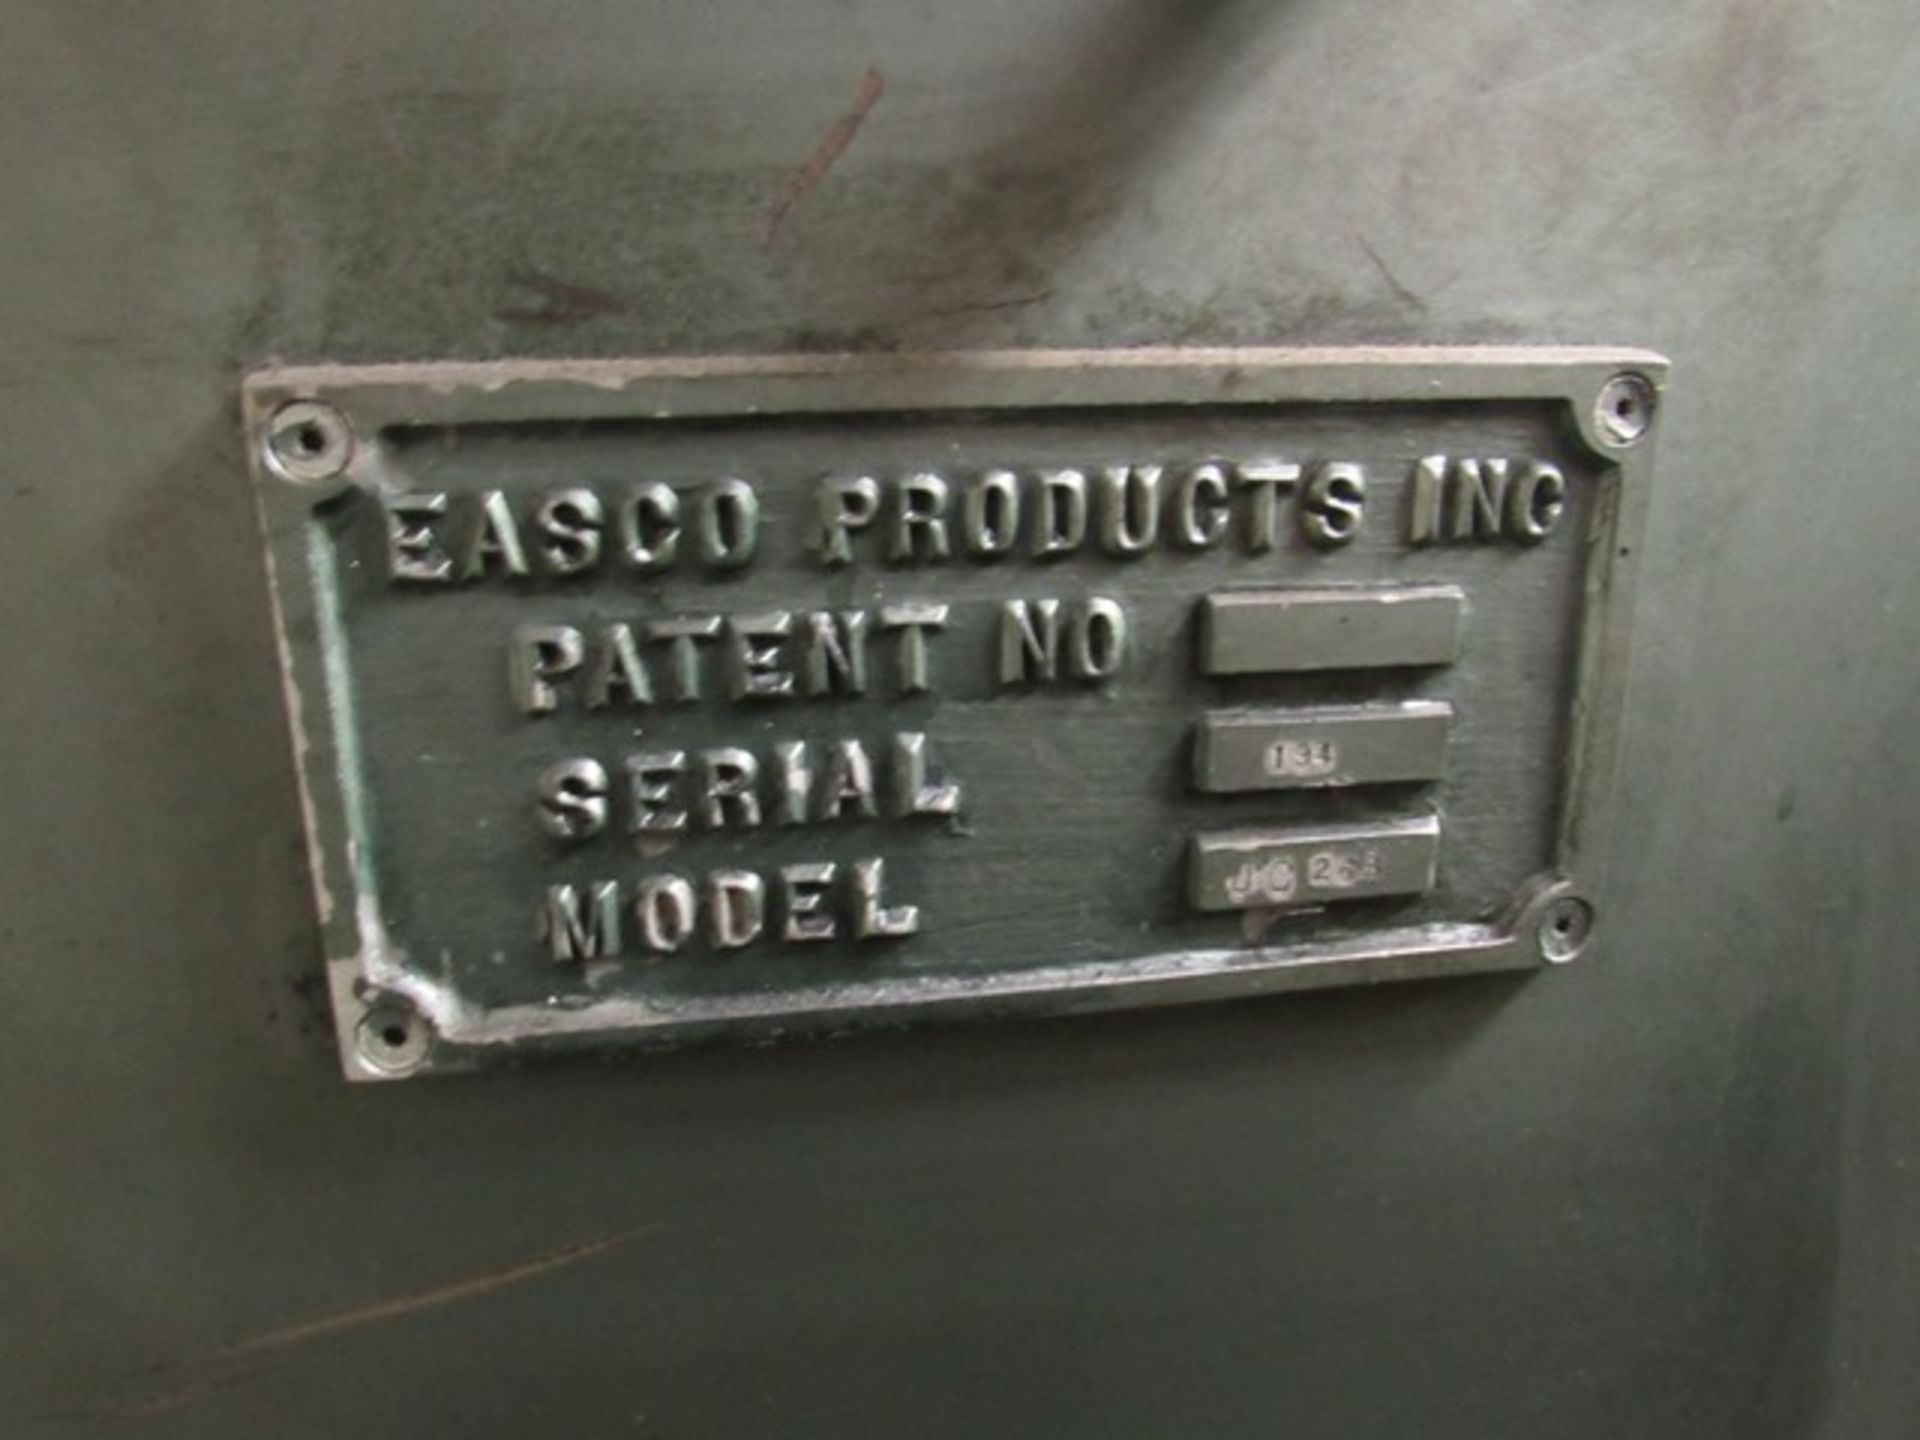 Easco Spark Matic, Model #JC263, S/N #134, Rigging Fee: $500 - Image 3 of 5